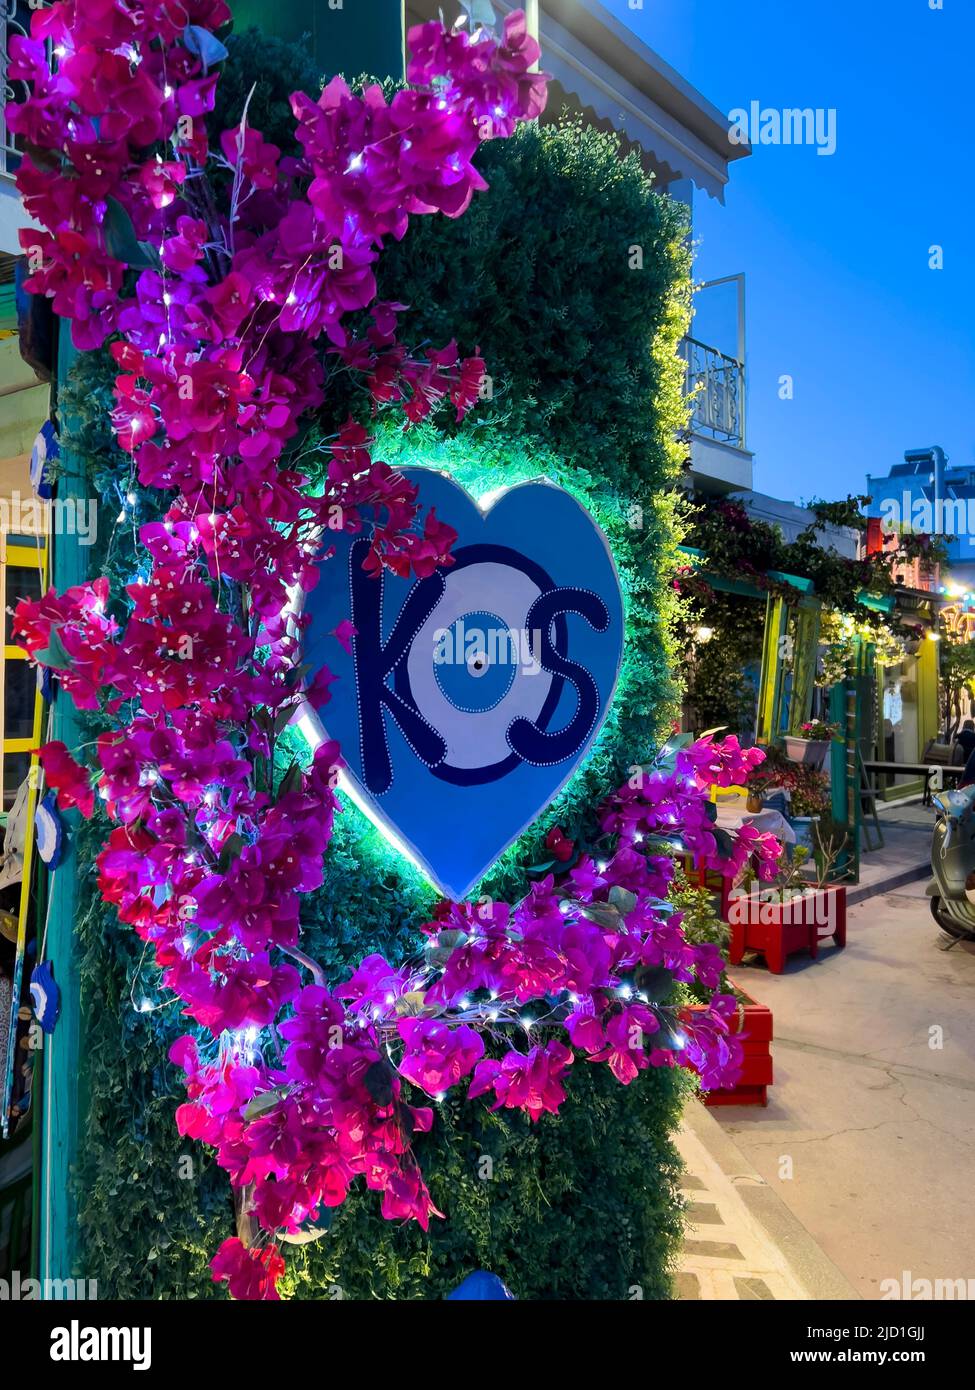 Kos-Griechenland, 05.31.2022: Geschäfte im Stadtzentrum von Kos Island. Traditionelles böses Auge-Design mit KOS-Text, umgeben von rosa Bougainvillea-Blumen Stockfoto